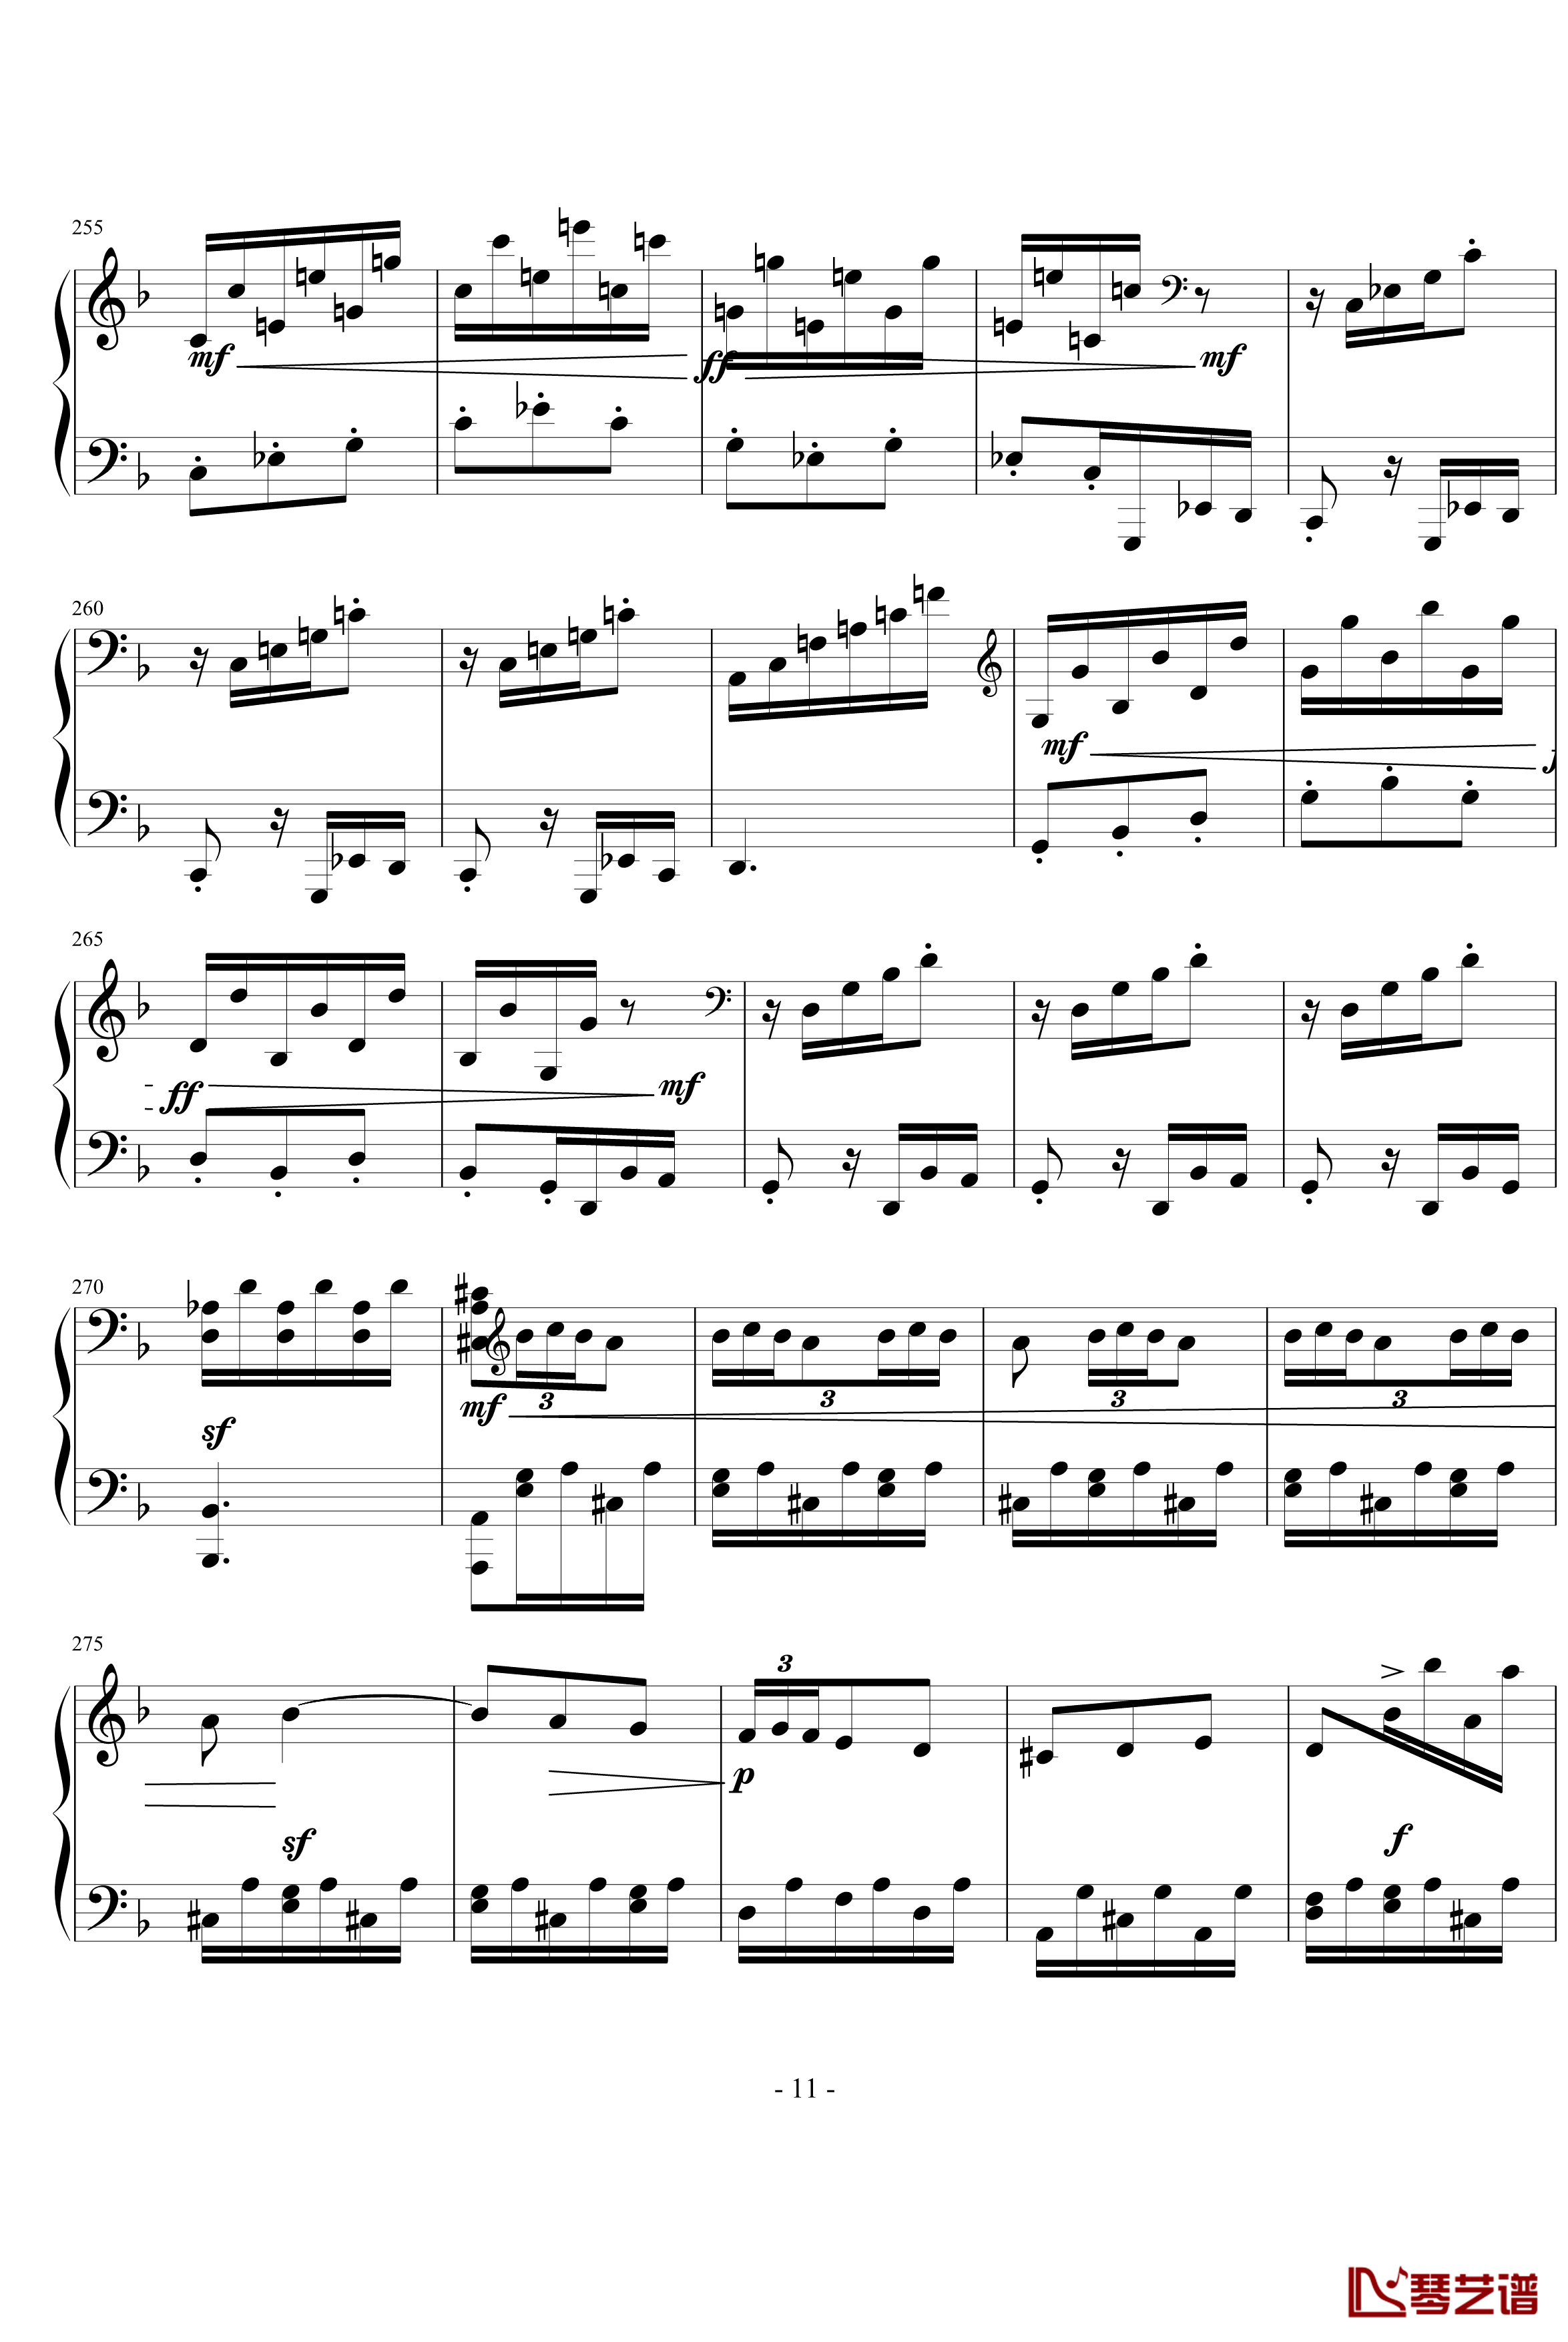 暴风雨第三乐章钢琴谱-贝多芬-beethoven11